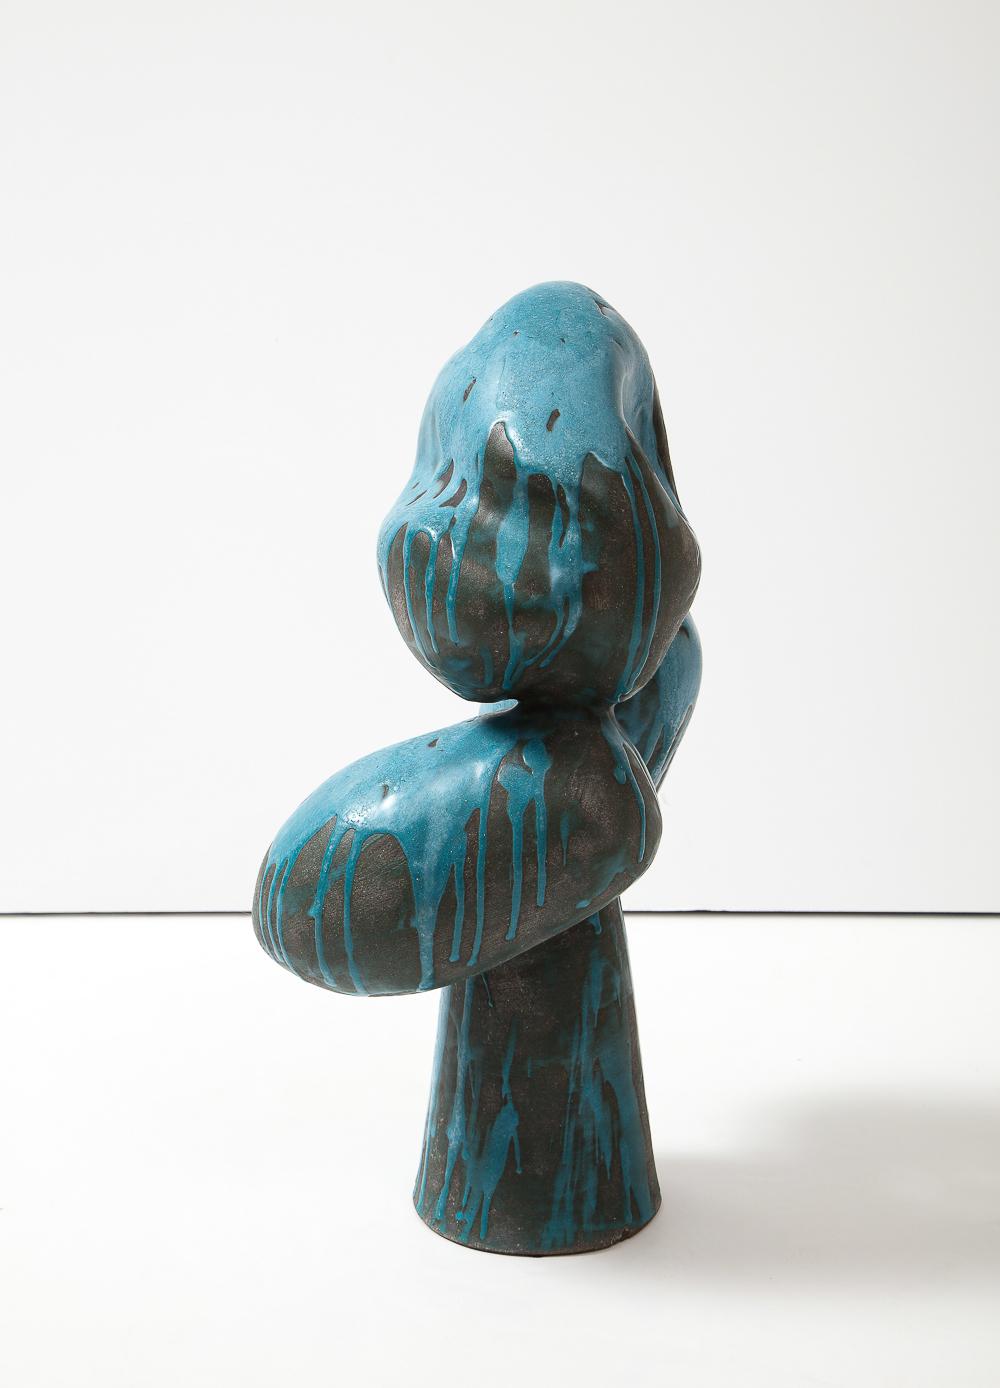 Keramik glasiert. Assemblage-Skulptur mit 3 organischen Formen, die auf einem konischen Sockel balancieren. Schwarzer Ton, der mit türkisfarbener Glasur beträufelt ist. Künstler - signiert auf der Unterseite.